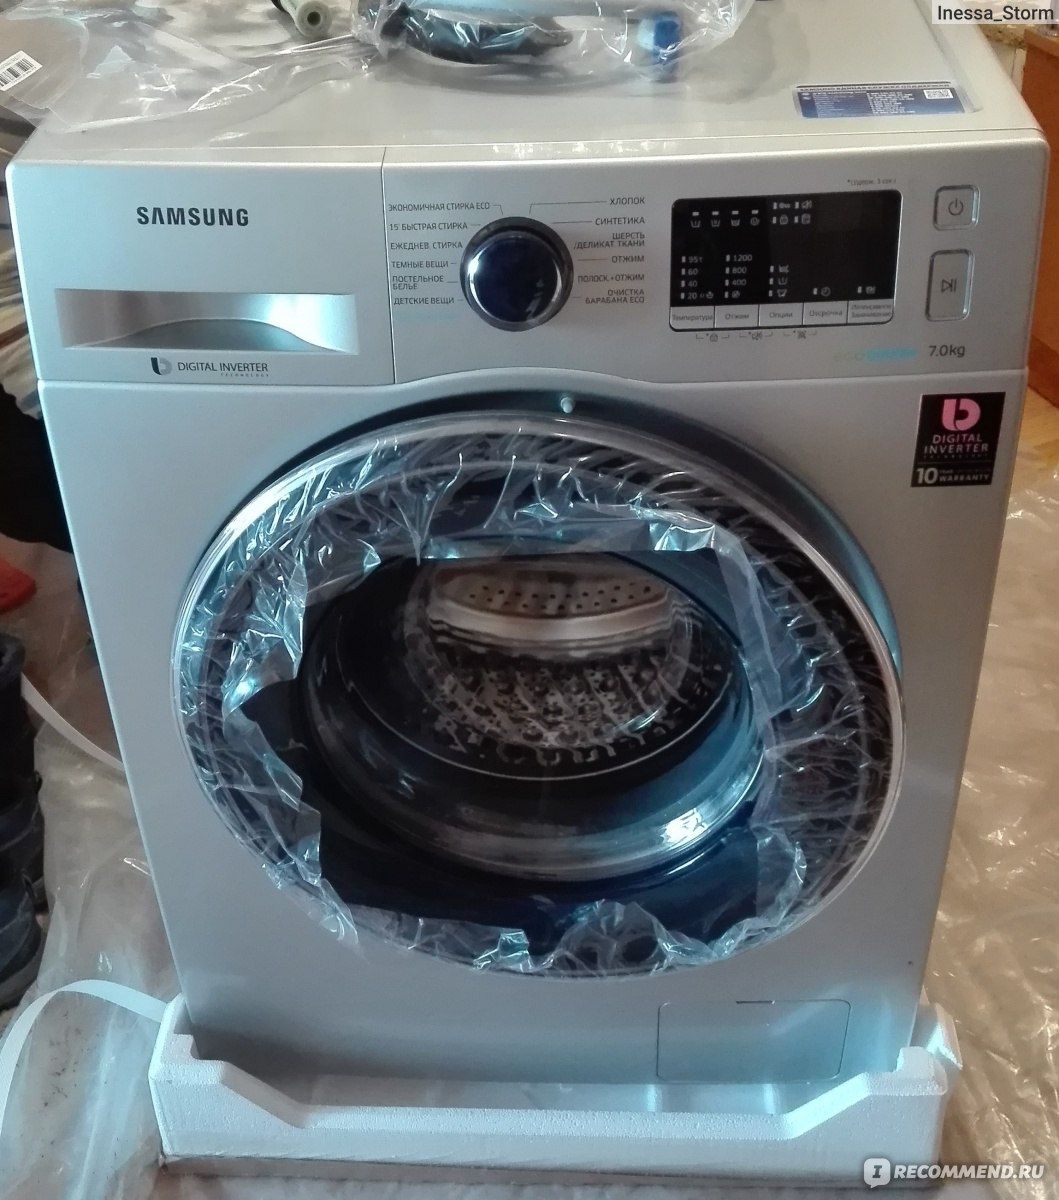 Отзывы о стиральной машине Samsung с дозагрузкой белья